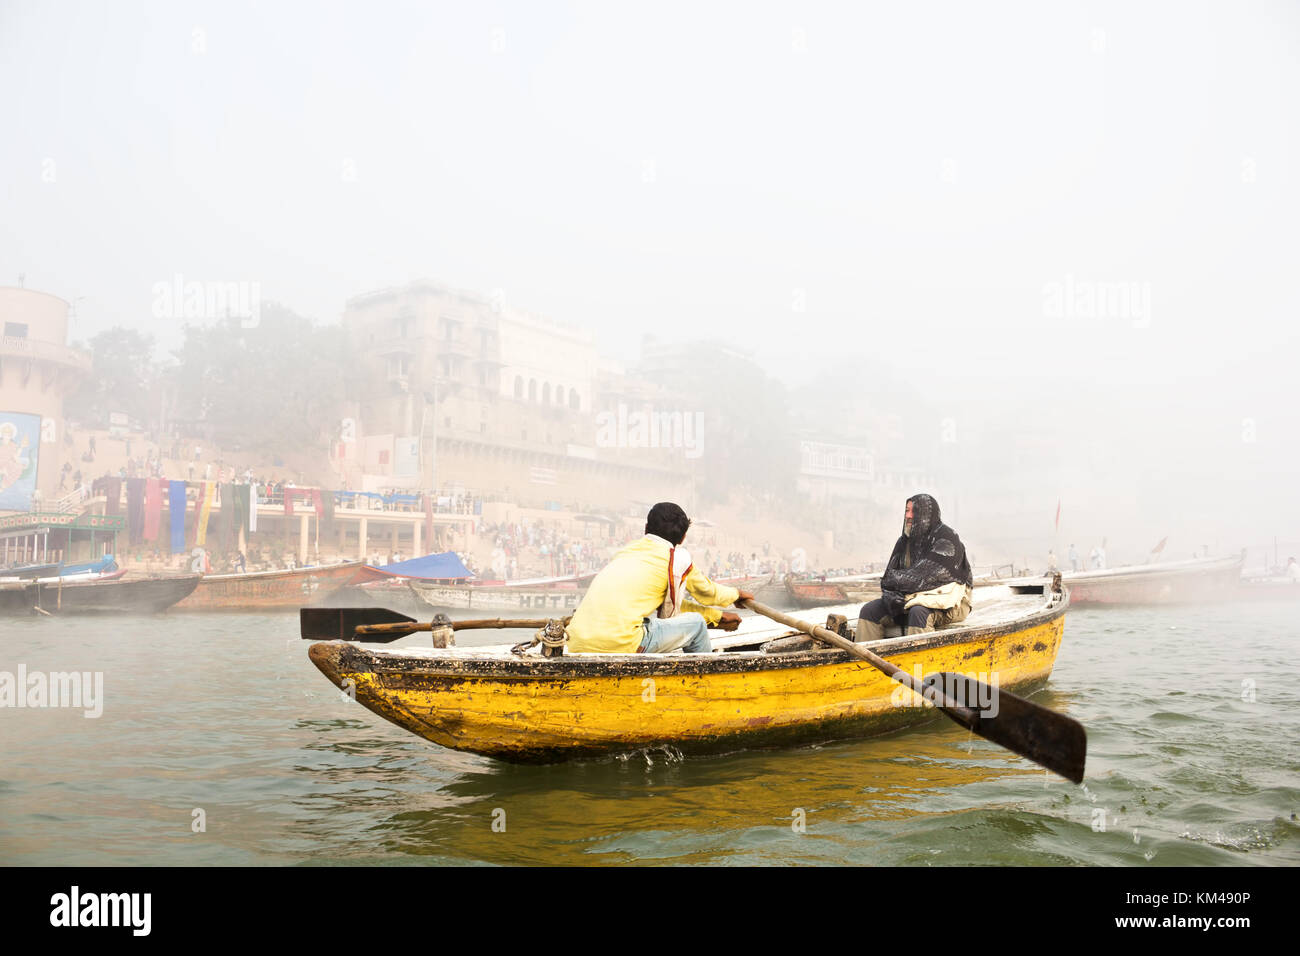 Eine ausländische Touristen genießen den Blick auf ghats durch den heiligen Fluss Ganges Touren auf einem hölzernen Ruderboot, Varanasi, benares, Kashi, Indien Stockfoto